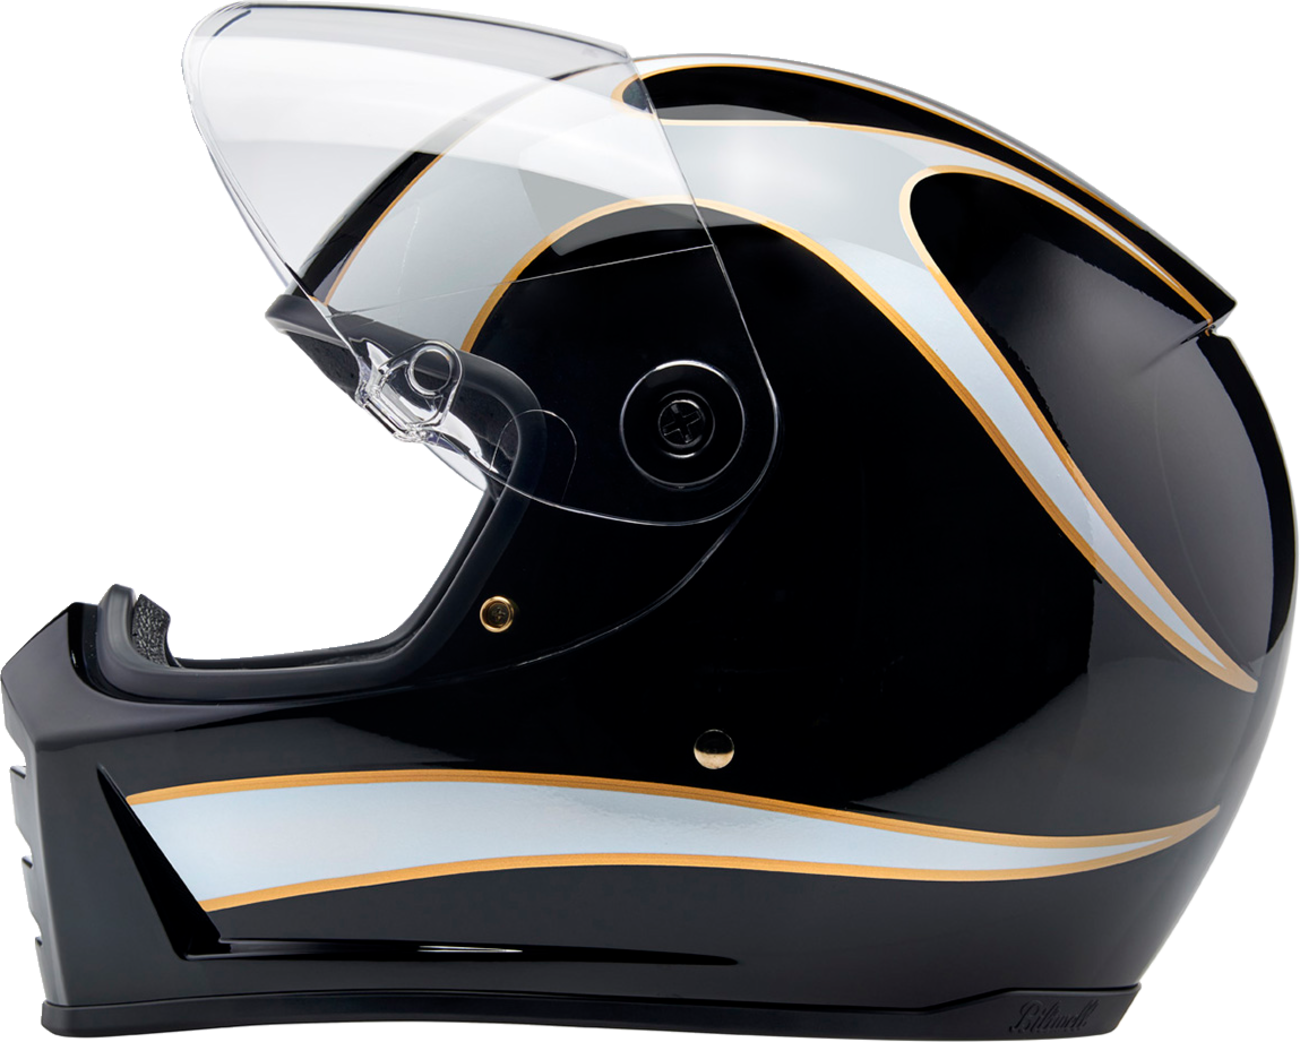 BILTWELL Lane Splitter Helmet - Gloss Black/White Flames - Medium 1004-570-503